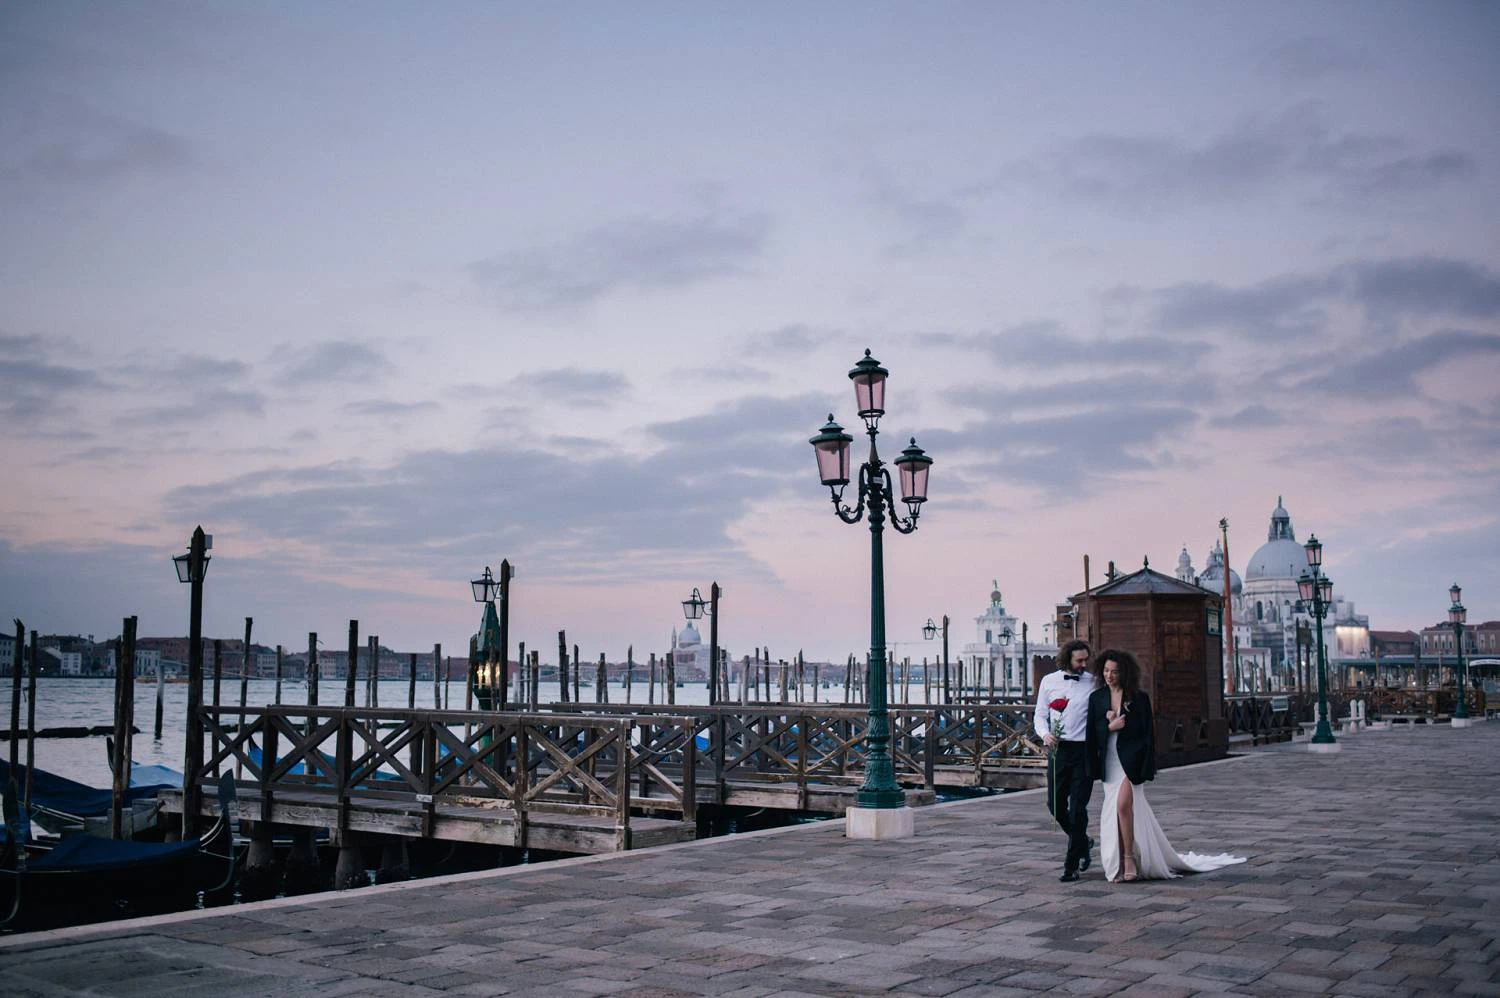 La Notte a Venezia. A Nocturnal Venice Wedding